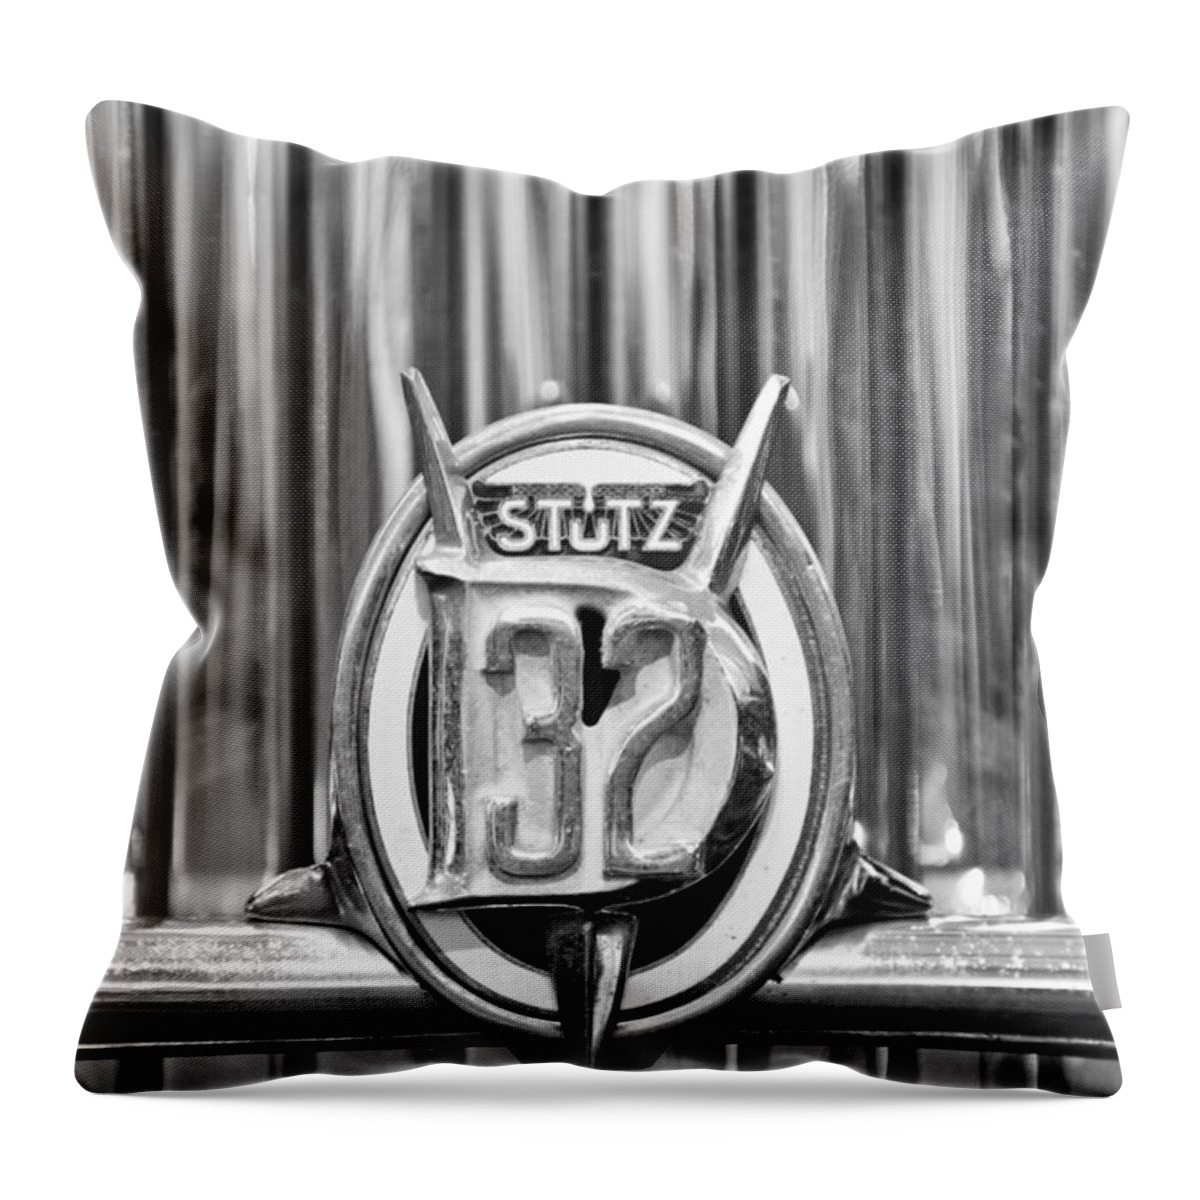 1933 Stutz Dv-32 Five Passenger Sedan Emblem Throw Pillow featuring the photograph 1933 Stutz DV-32 Five Passenger Sedan Emblem by Jill Reger